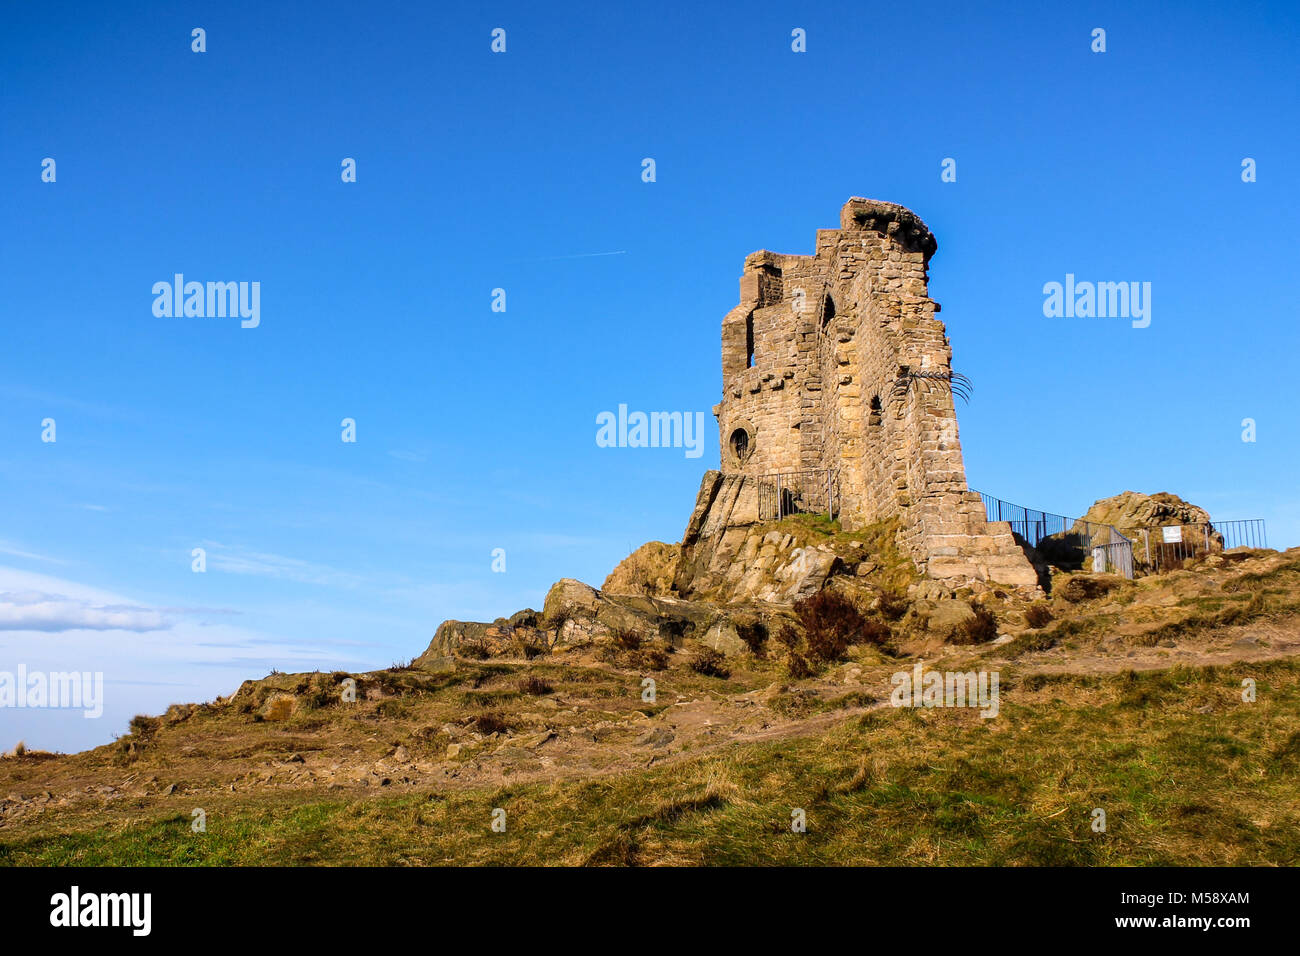 Die Ruinen der mittelalterlichen Turm von Mähen Cop, in Cheshire Vereinigtes Königreich. Stockfoto